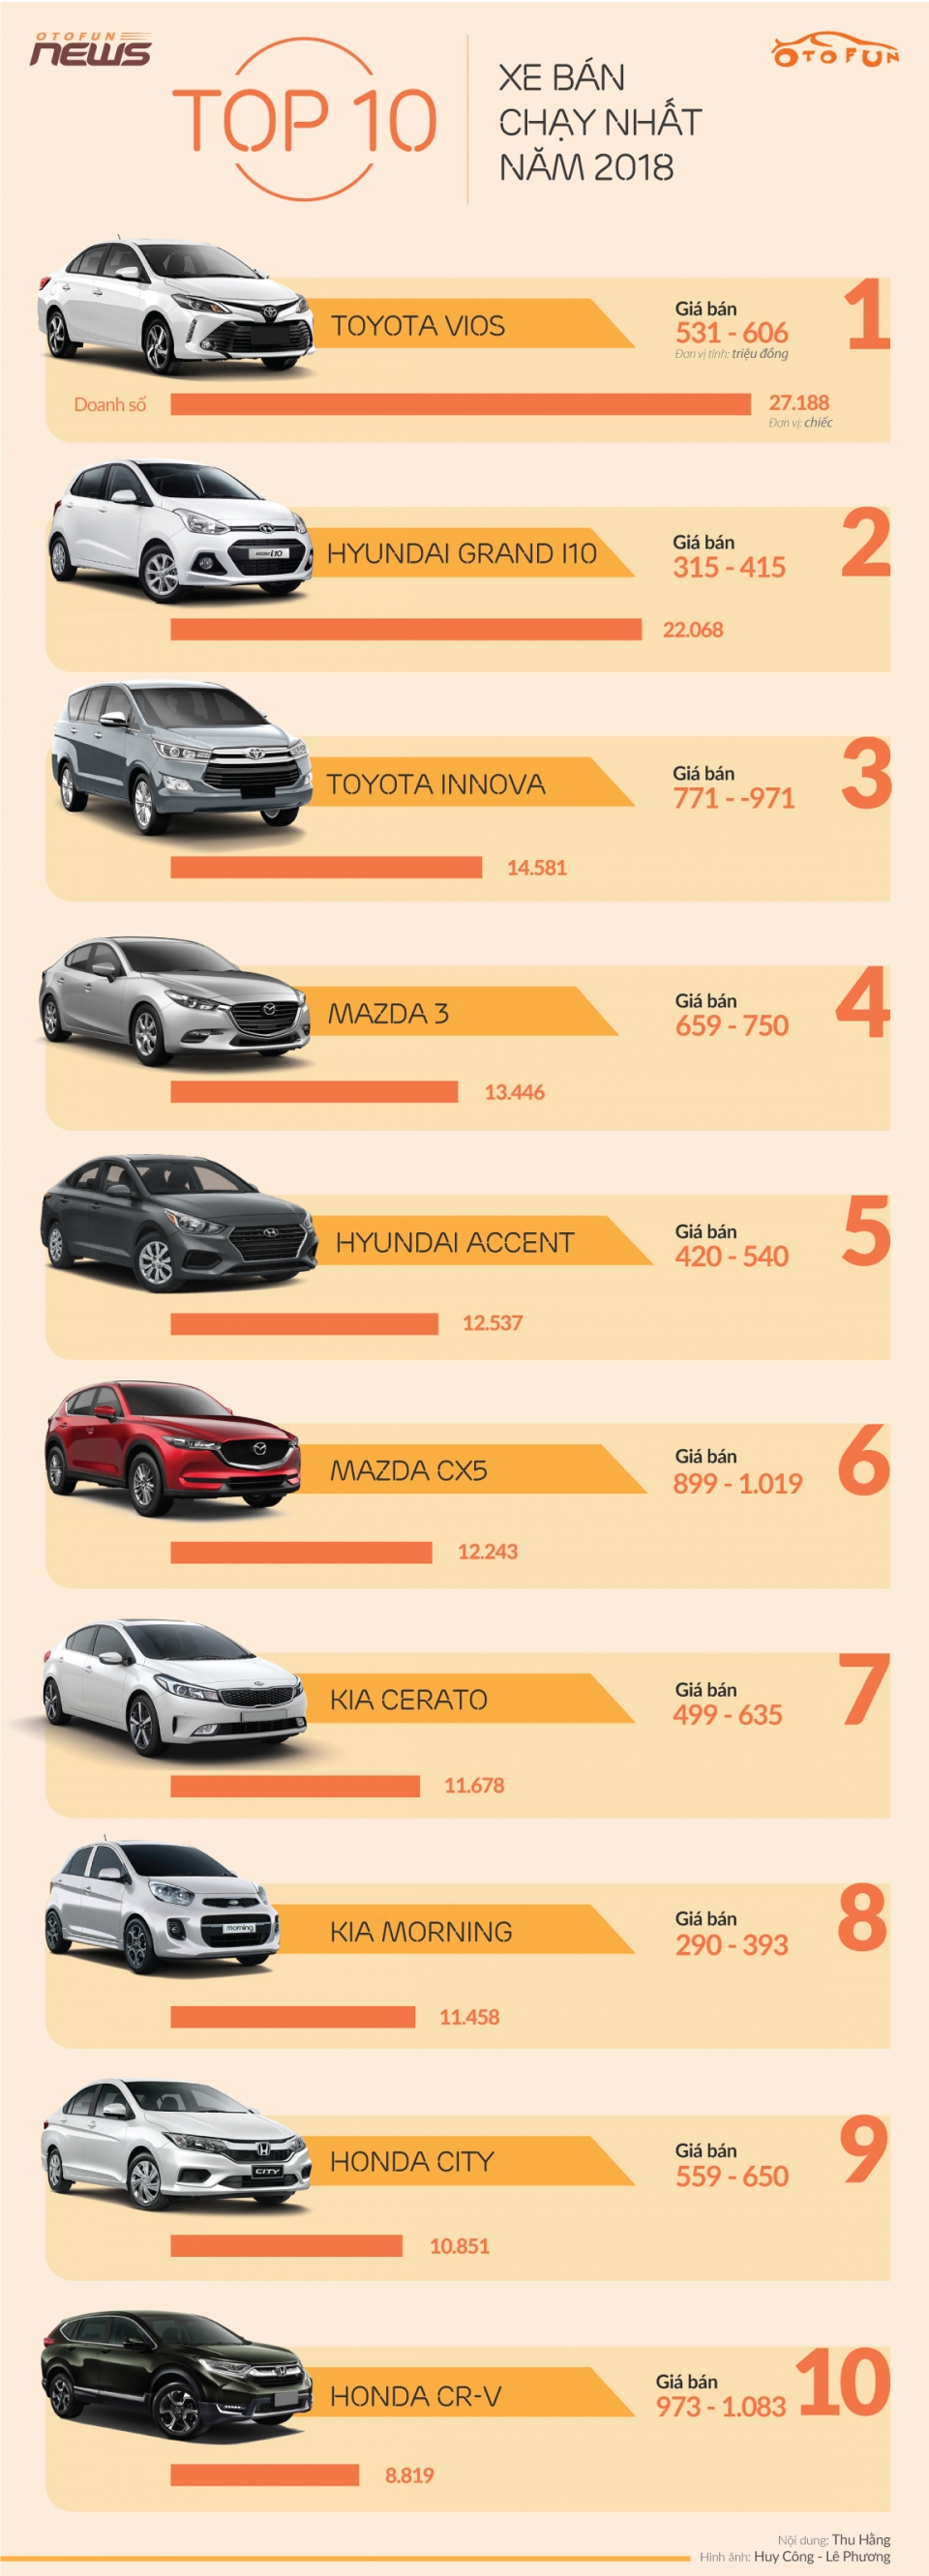 infographic 10 xe ban chay nhat viet nam nam 2018